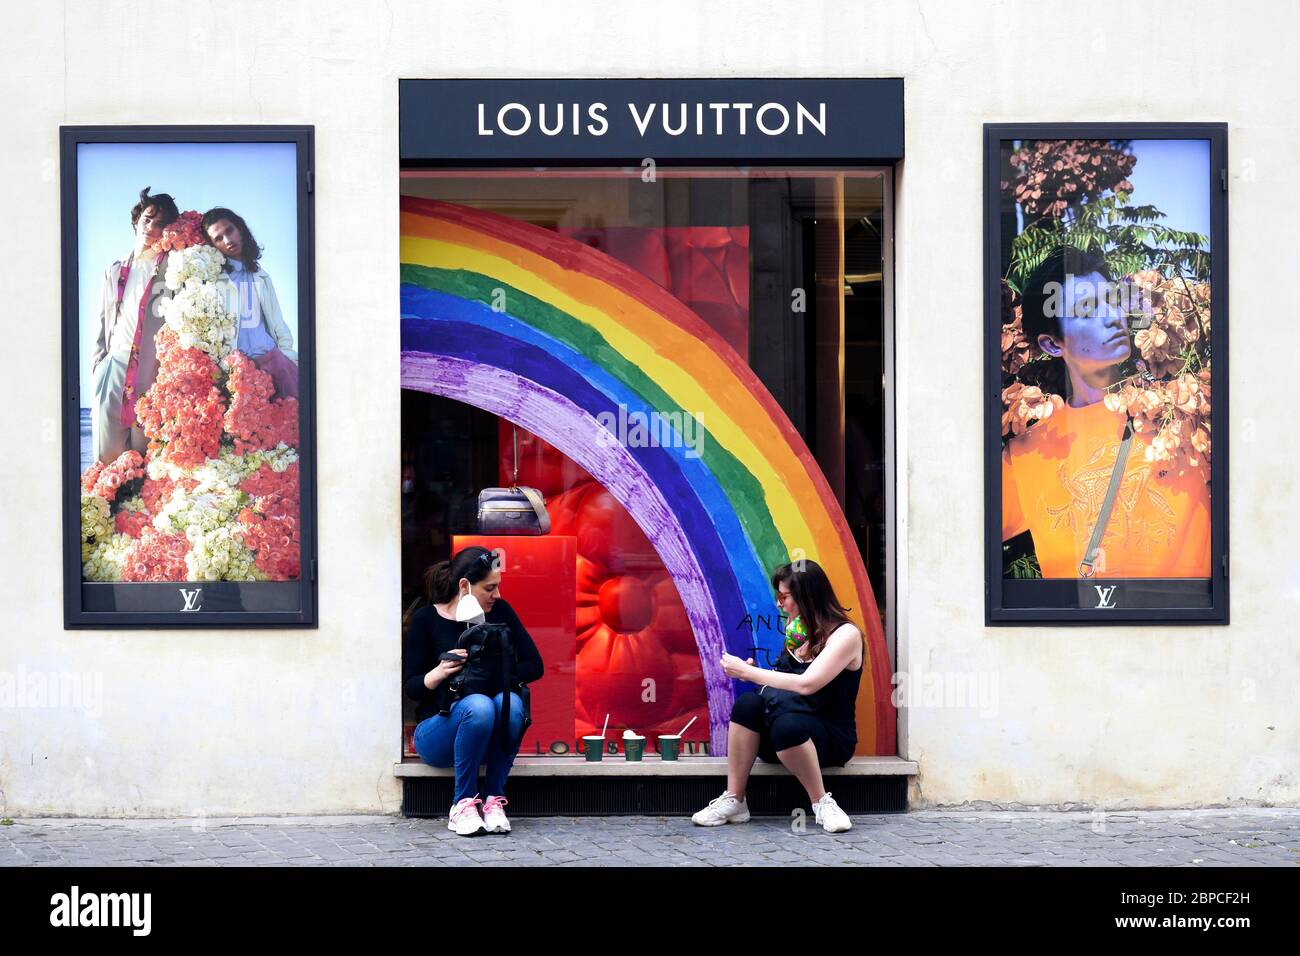 Deux jeunes amies féminines assises devant la fenêtre du magasin phare Louis Vuitton, font une pause détente et prennent leur masque médical pendant le confinement du coronavirus Covid 19. Rome, Italie, Europe, Union européenne, UE. Banque D'Images